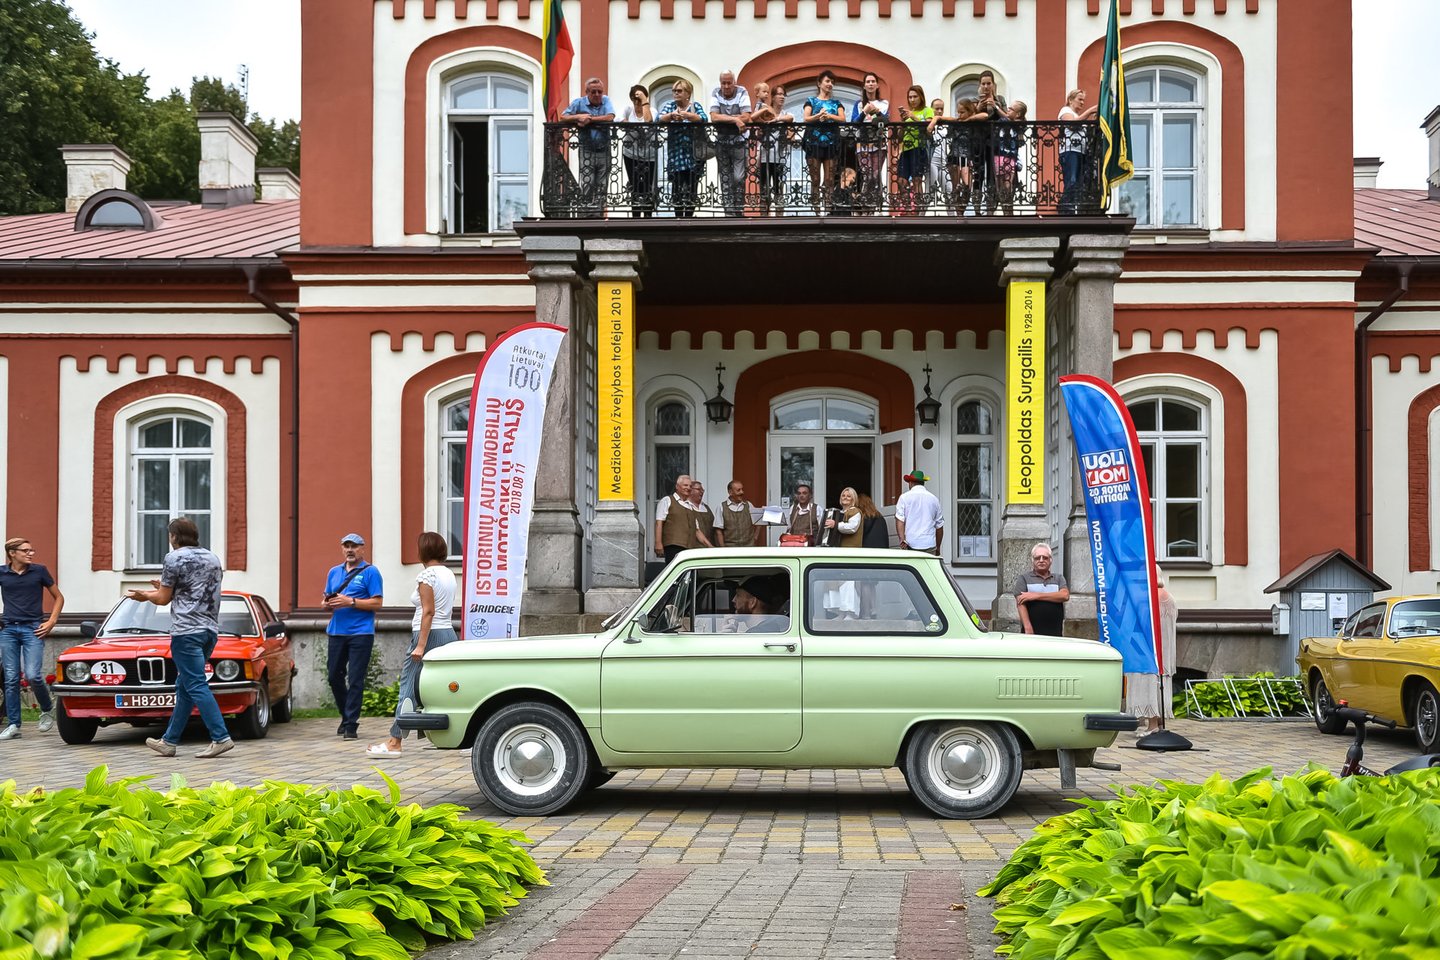  Širvintų, Molėtų ir Anykščių rajonų apylinkėse vyko istorinių automobilių ir motociklų ralis.<br> Vytauto Pilkausko nuotr.